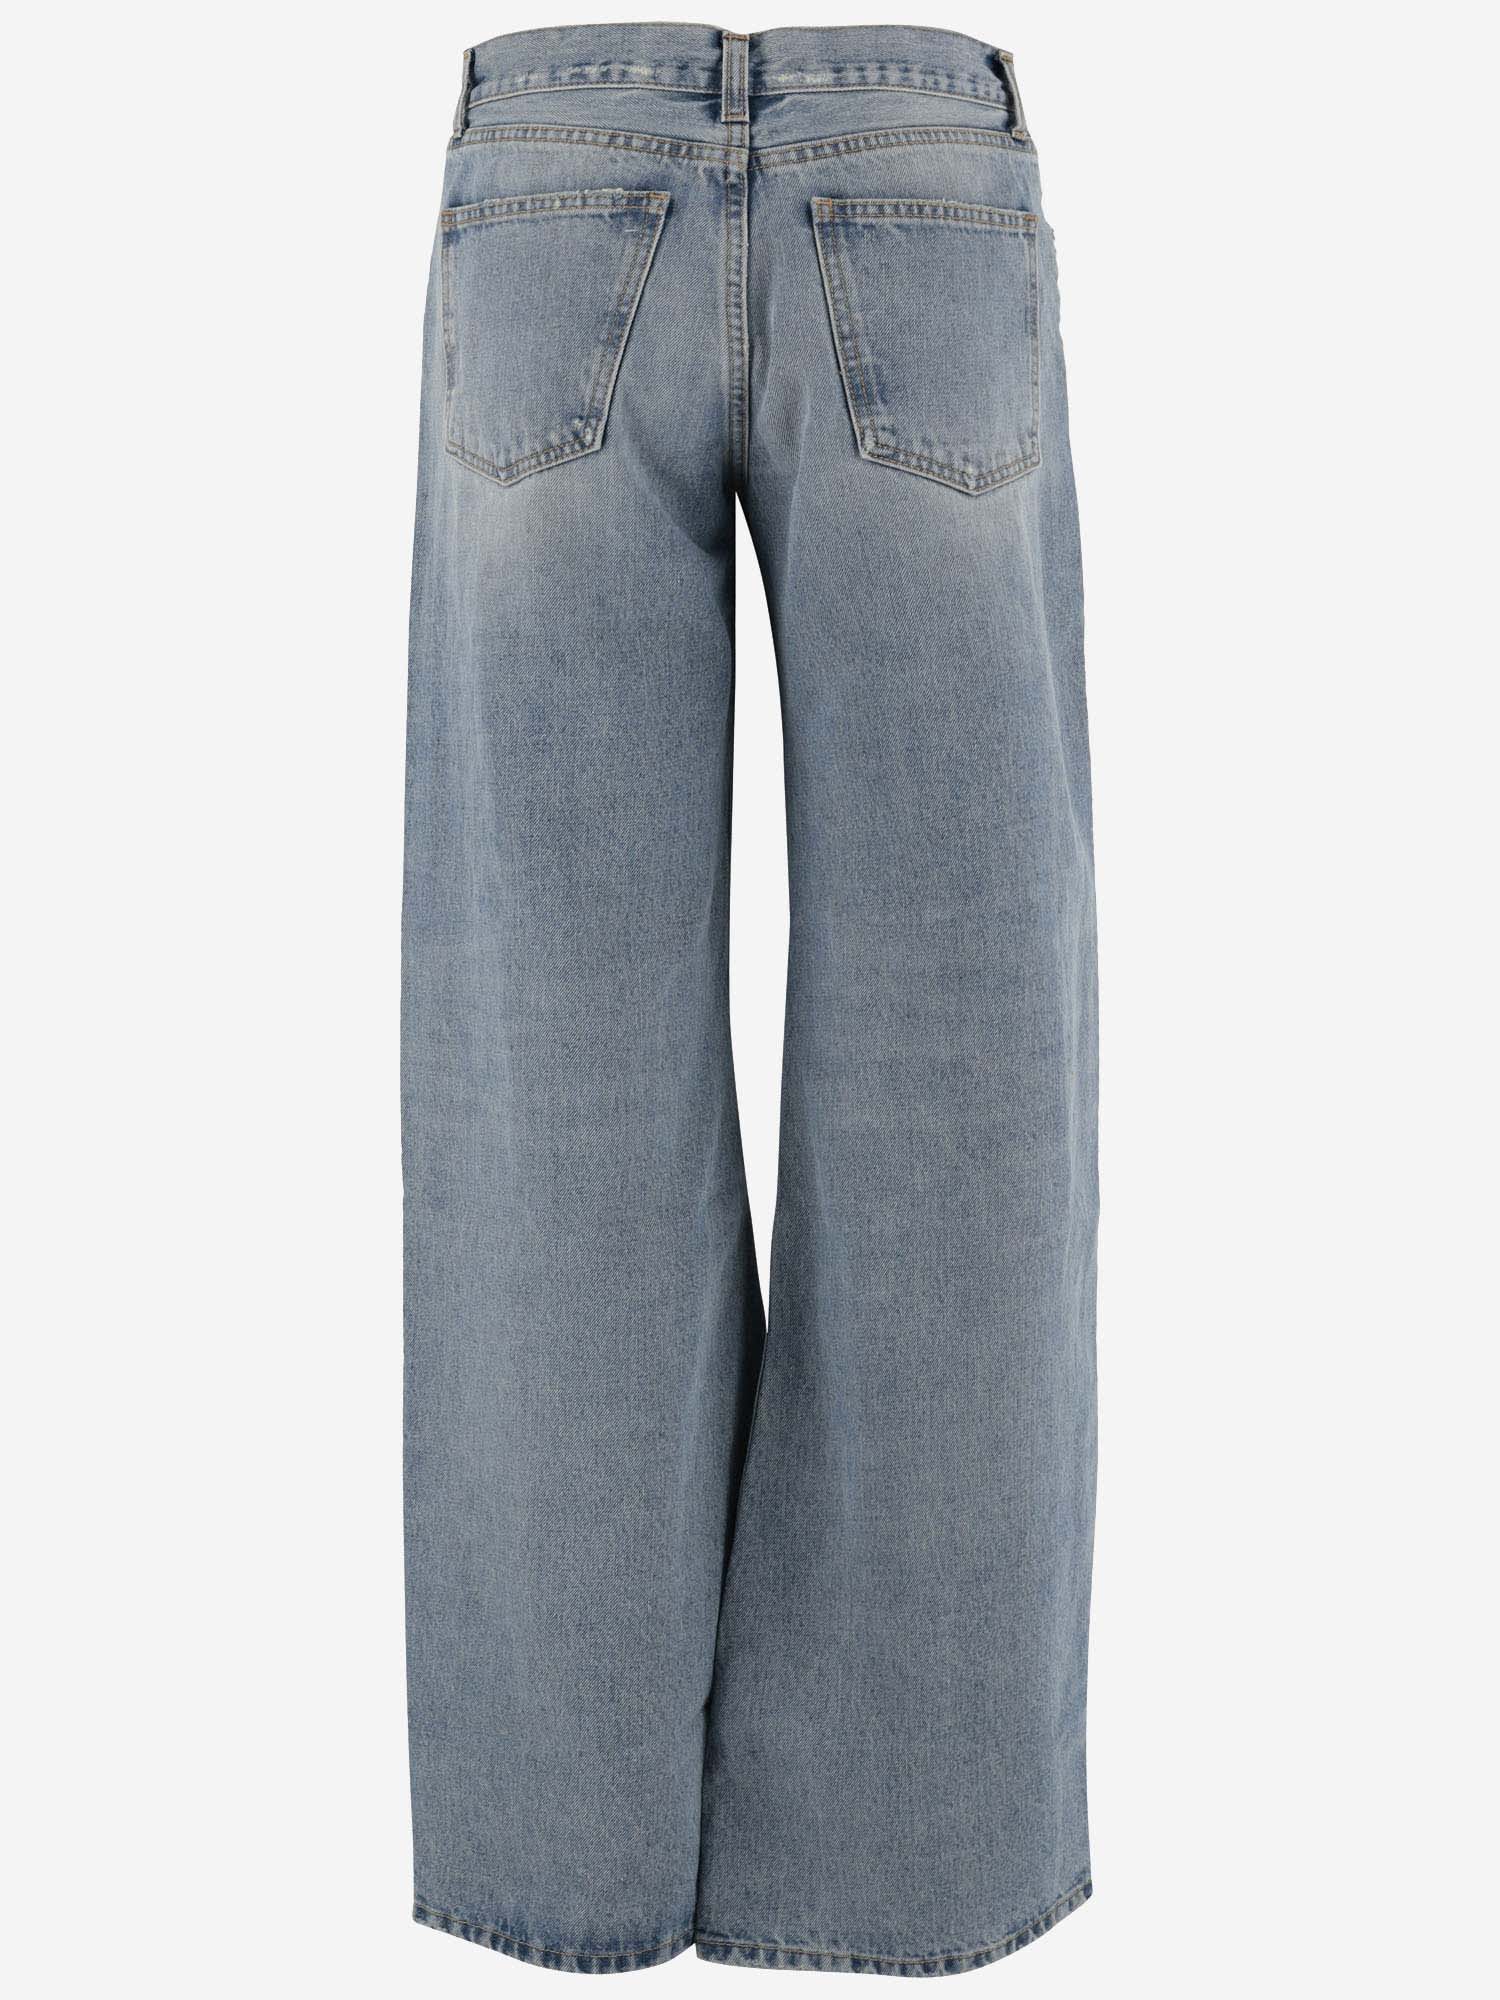 Shop Armarium Cotton Denim Jeans